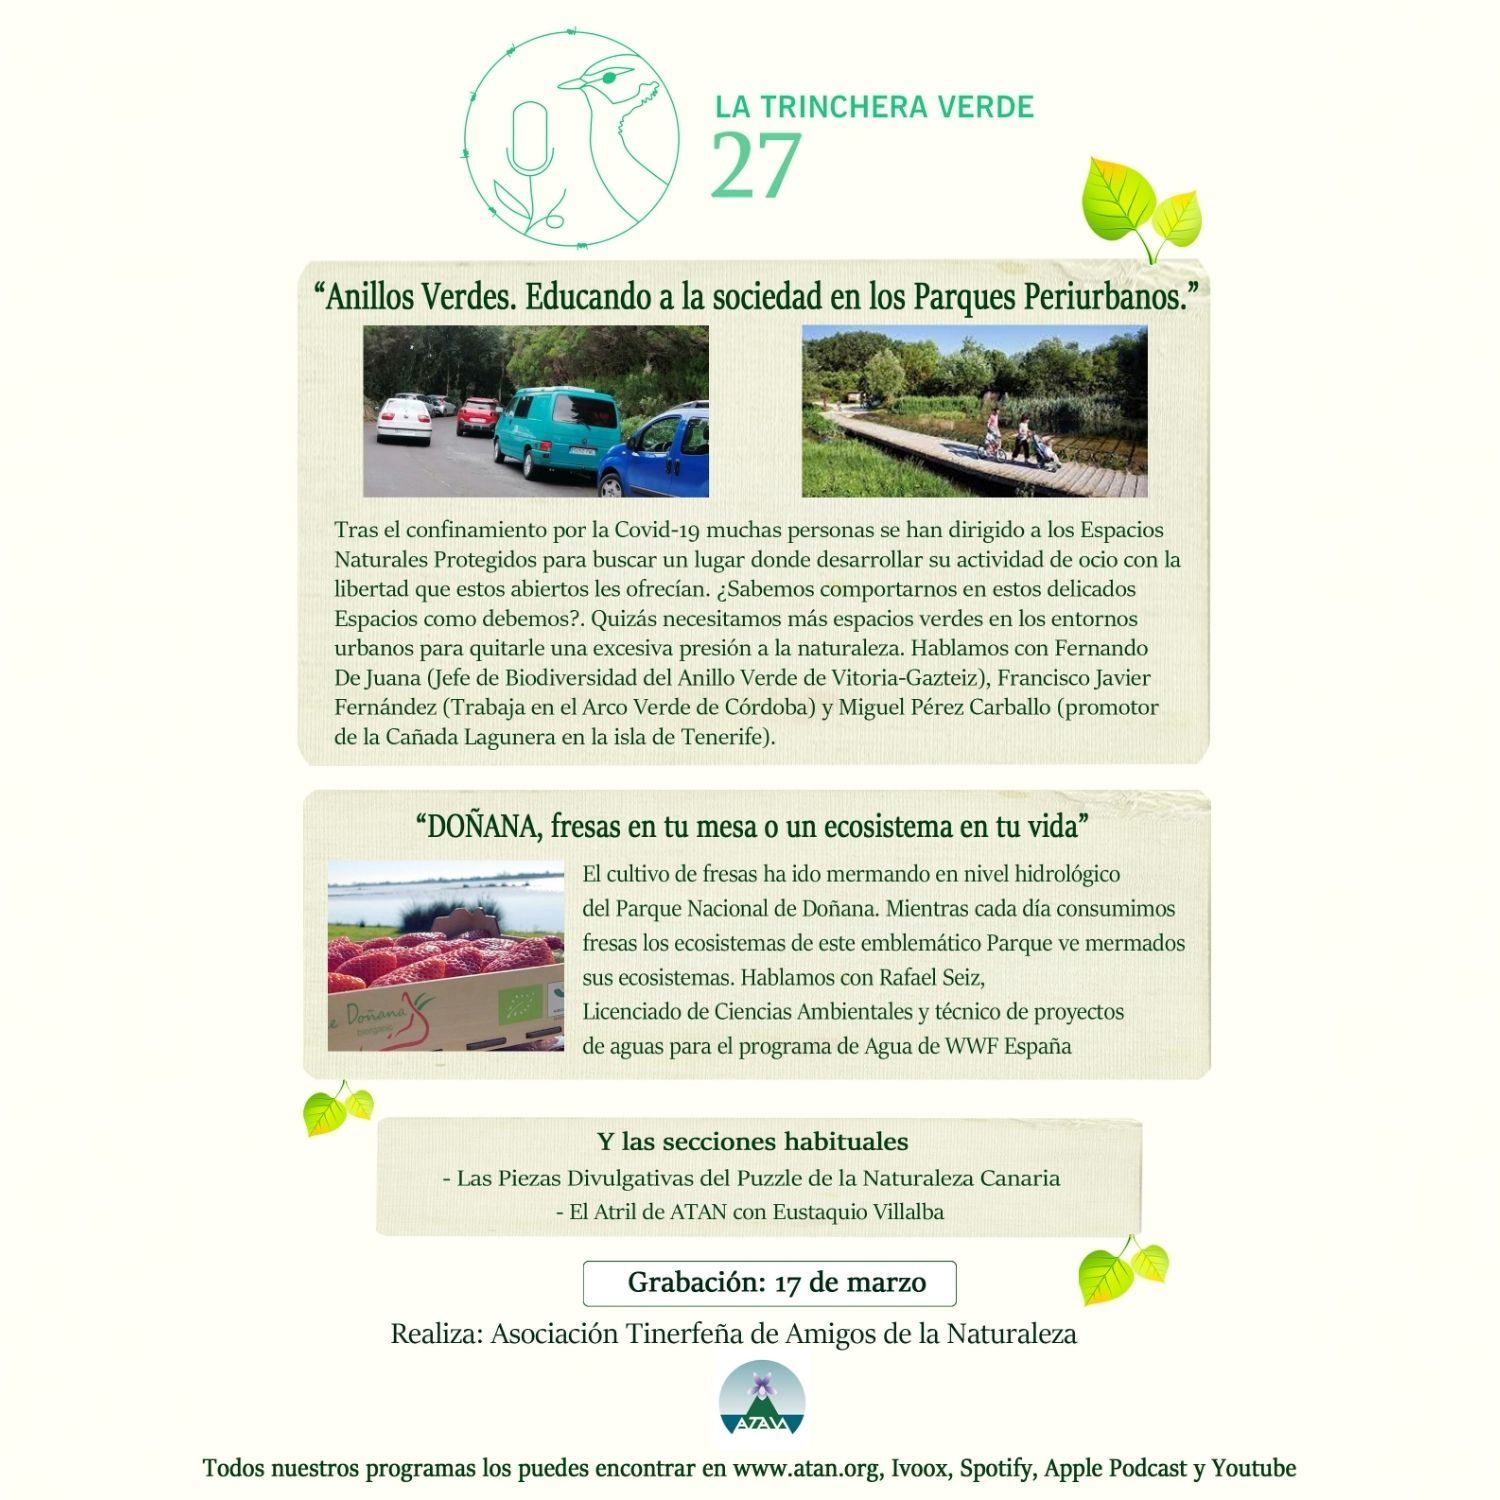 La Trinchera Verde 27 – Las Fresas secan Doñana. Anillos Verdes, Educando a la Sociedad